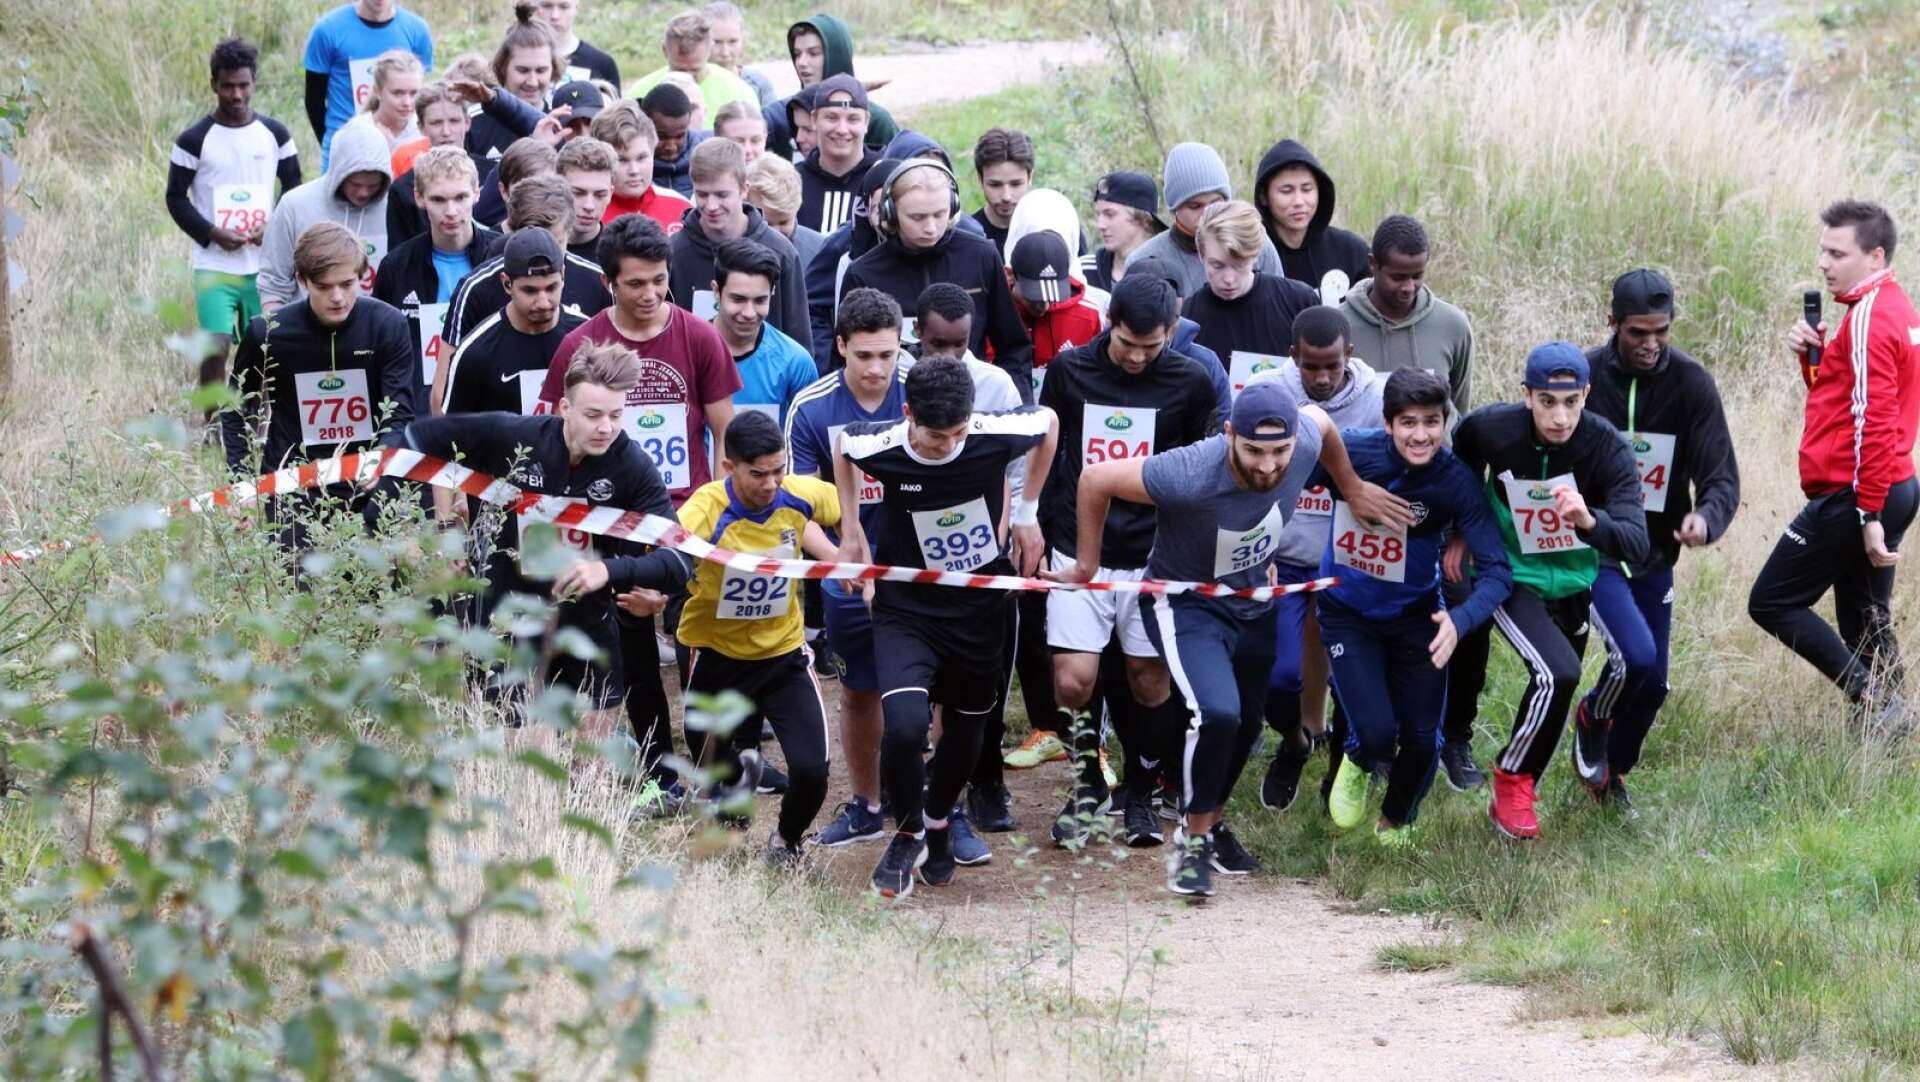 Spångbergsjoggen hölls på Kalhyttans friluftsområde där eleverna fick springa en 4,6 kilometer lång bana. Här går starten.